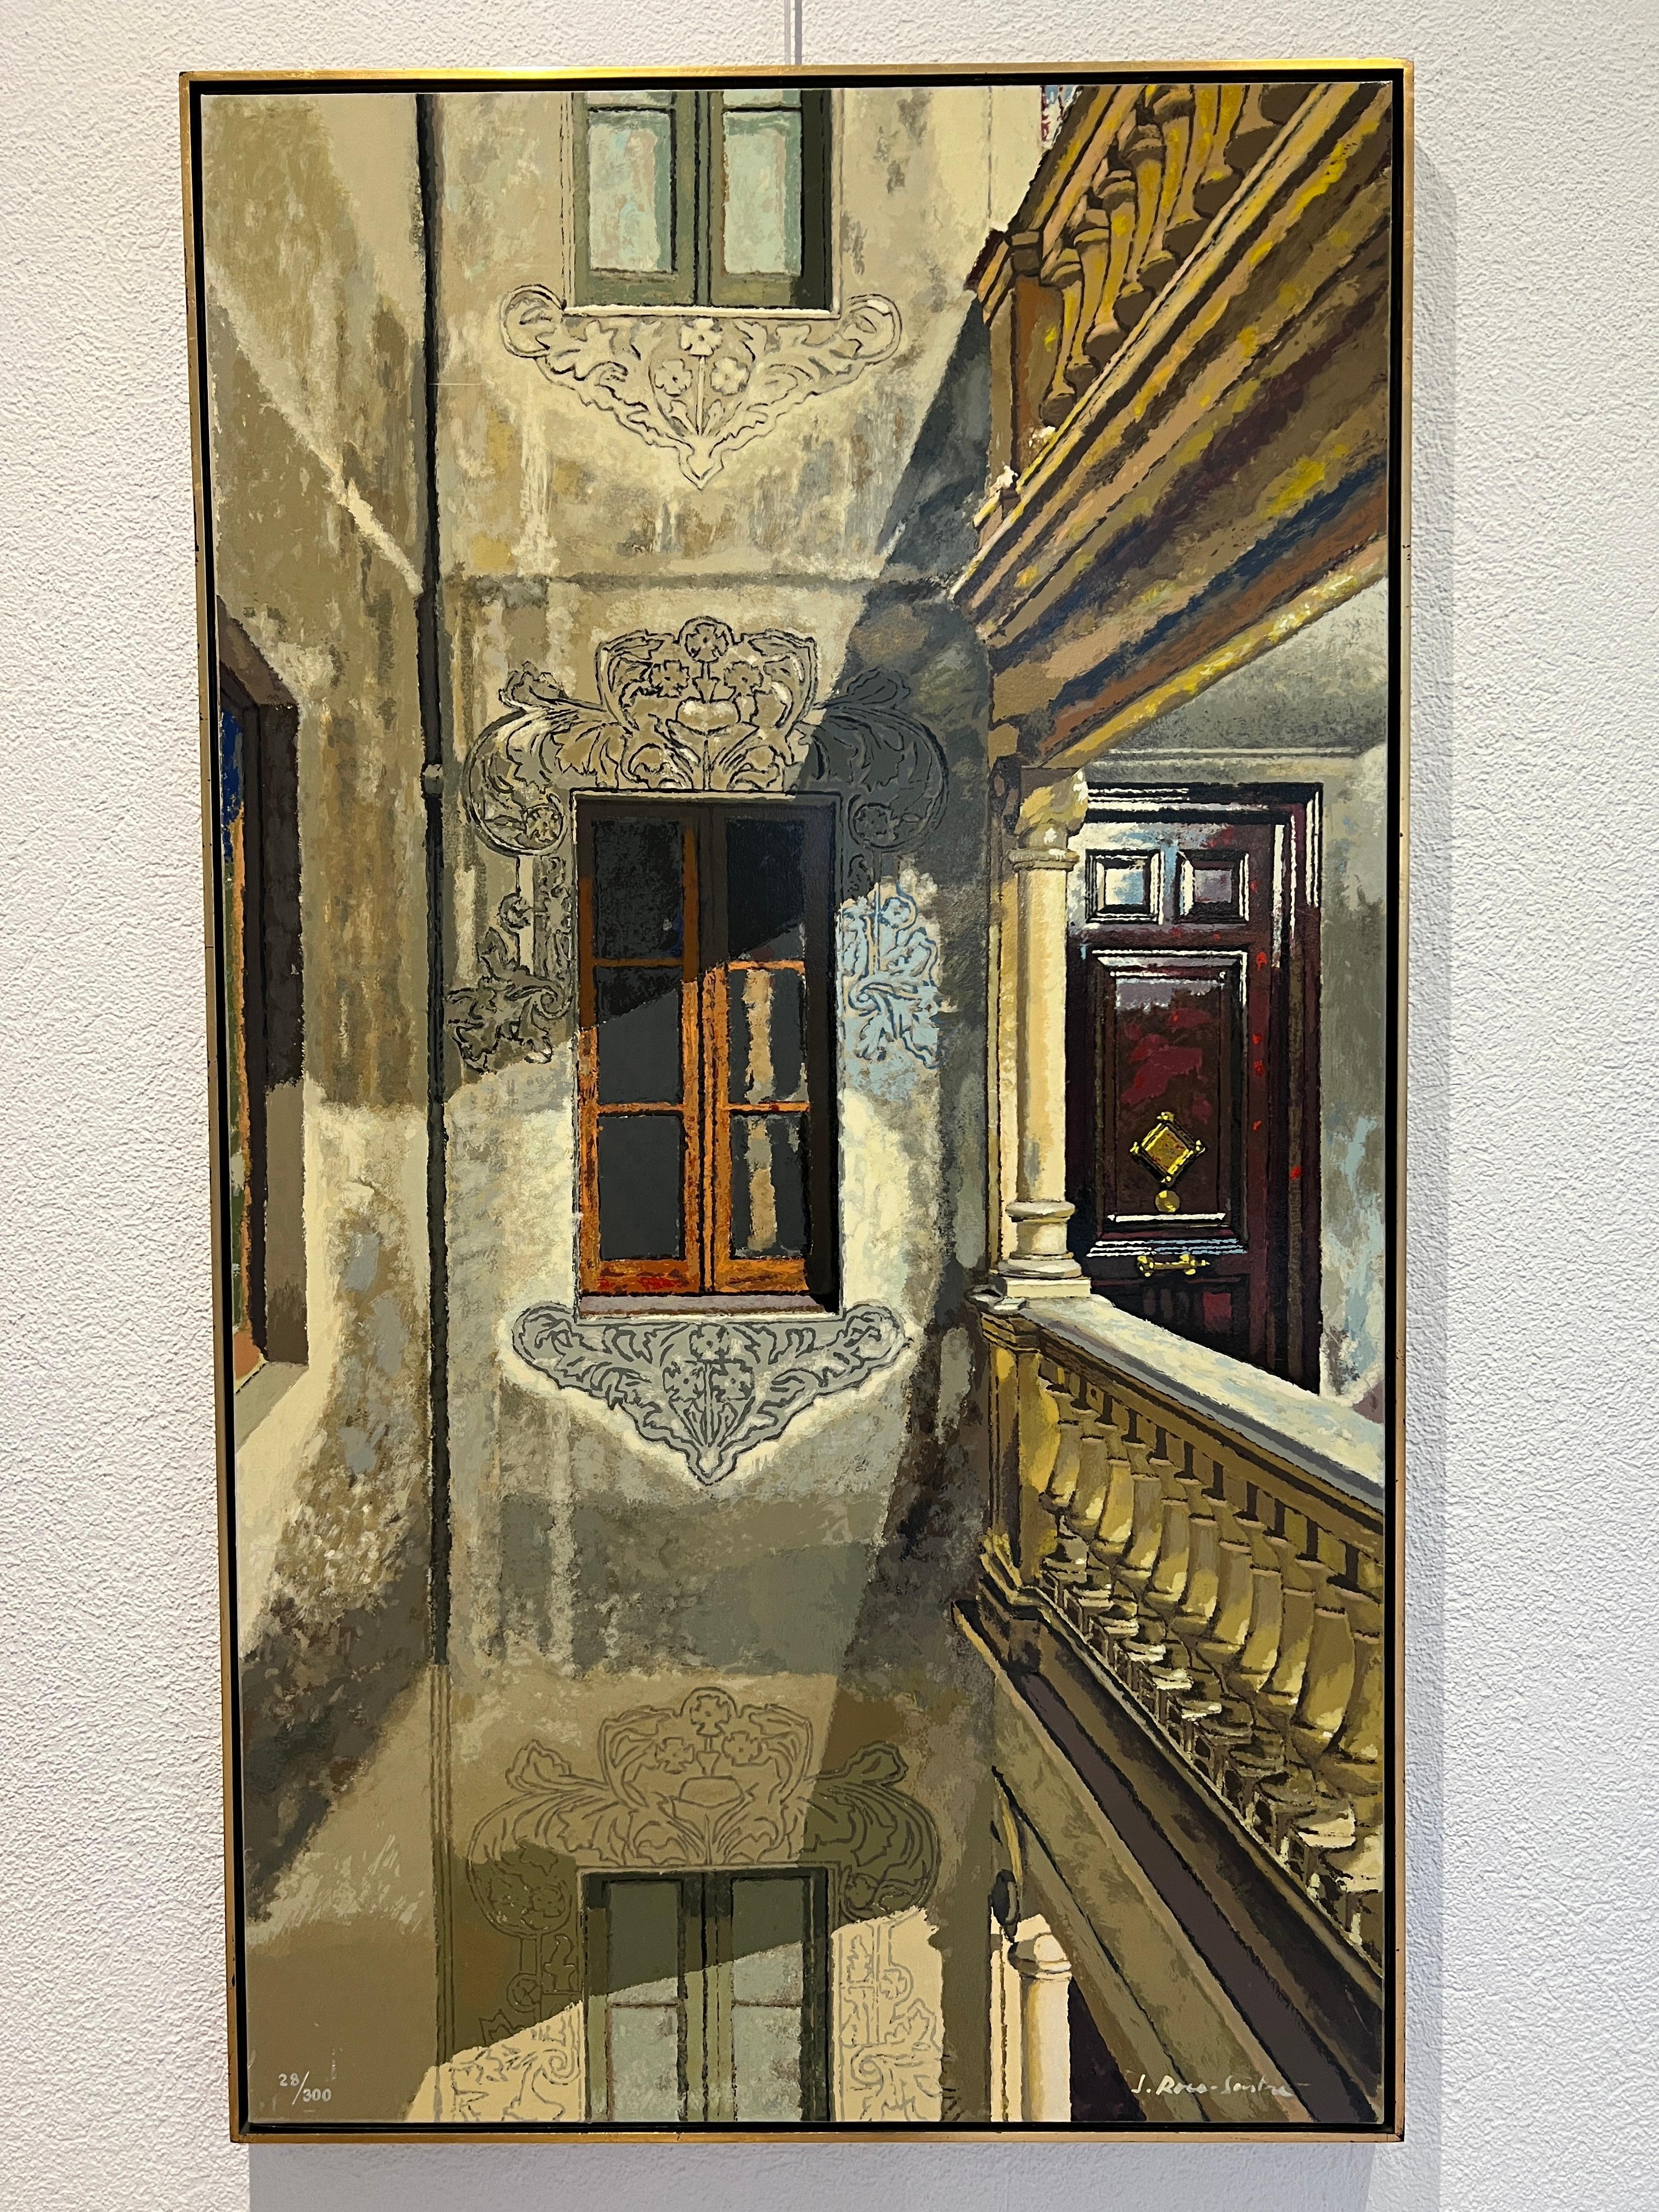 Courtyard - Print by José Roca-Sastre